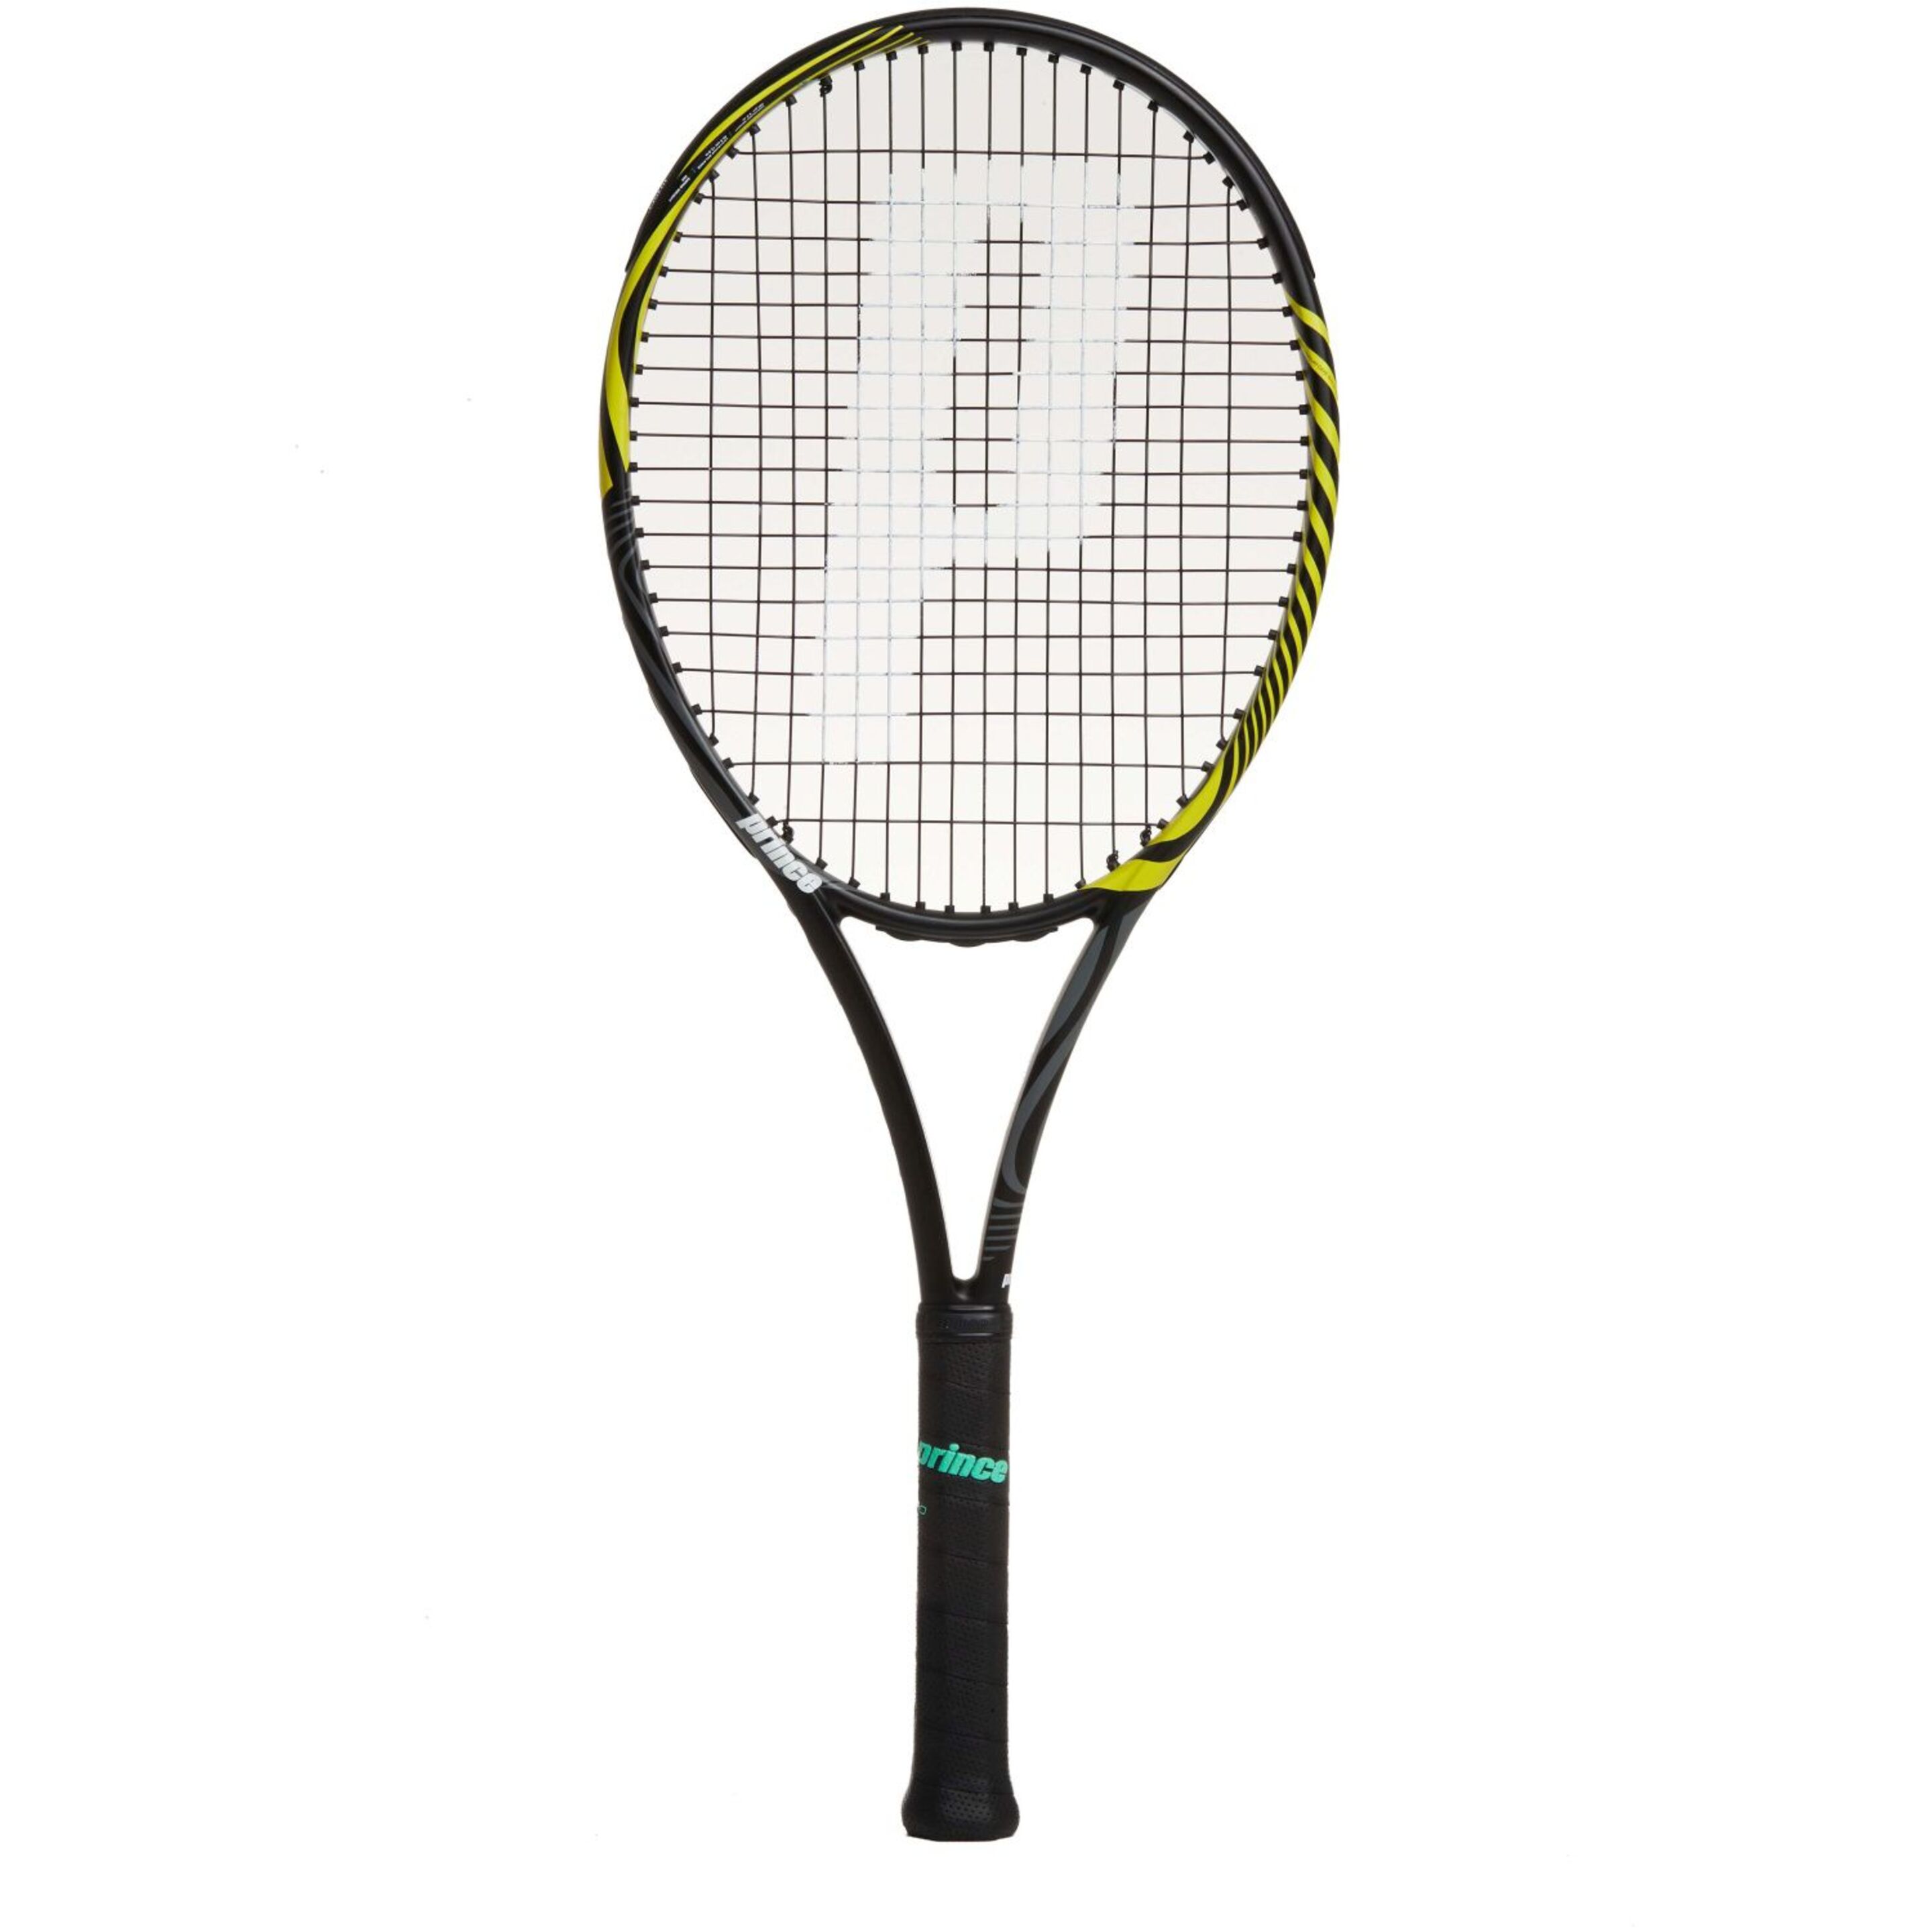 Raqueta De Tenis Prince Ripcord 100 280 G (encordada Y Con Funda) - Amarillo/Negro  MKP